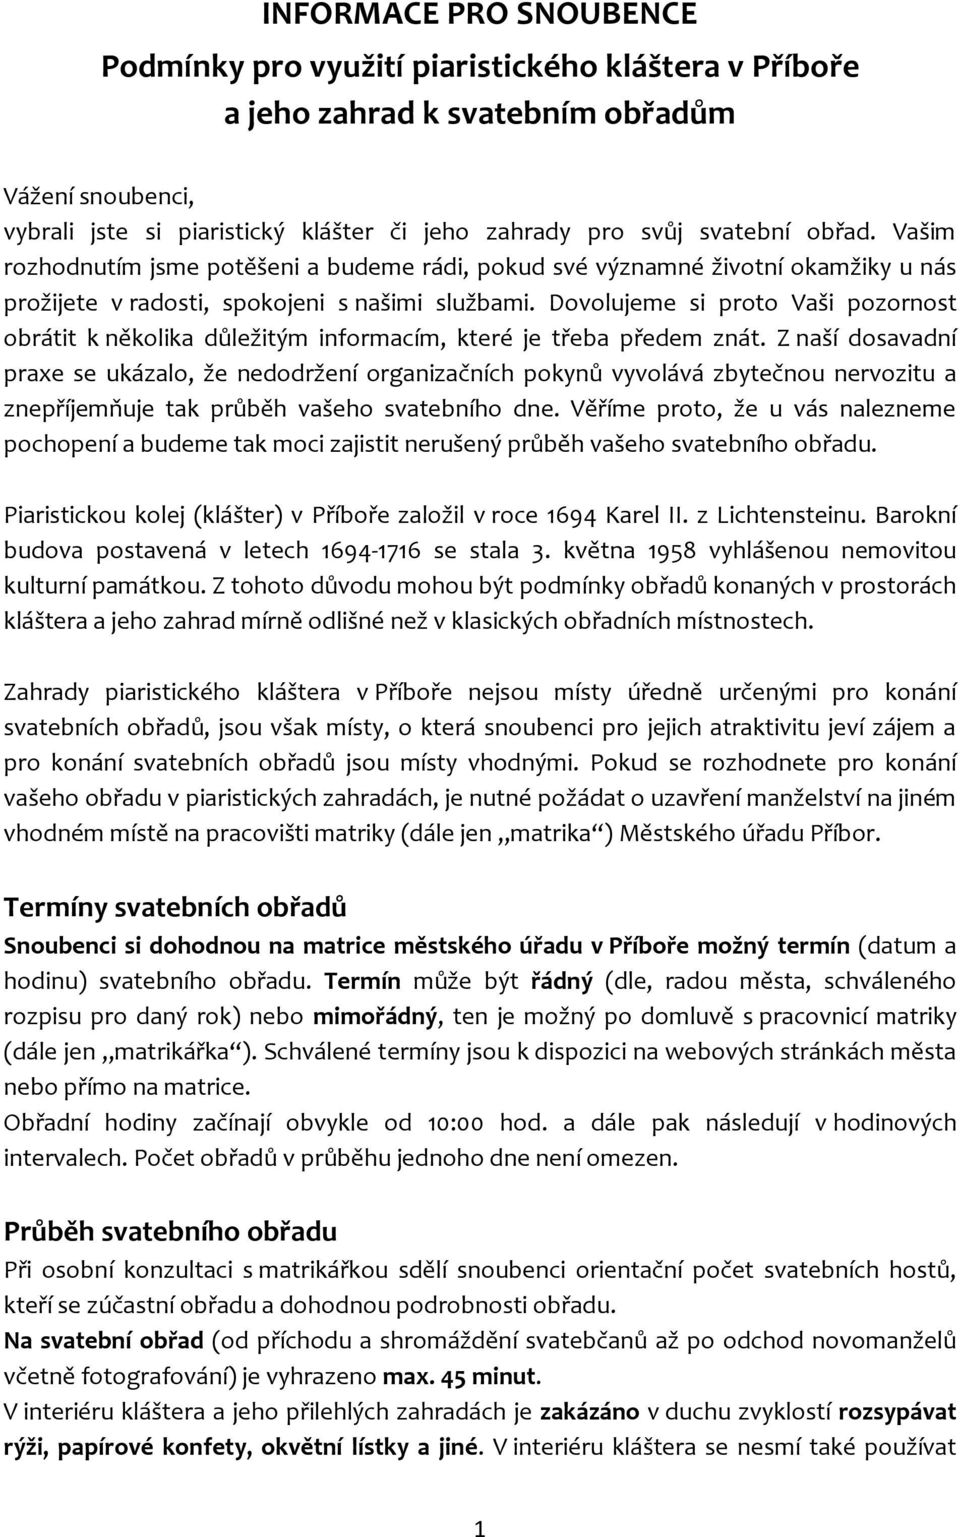 INFORMACE PRO SNOUBENCE Podmínky pro využití piaristického kláštera v  Příboře a jeho zahrad k svatebním obřadům - PDF Free Download